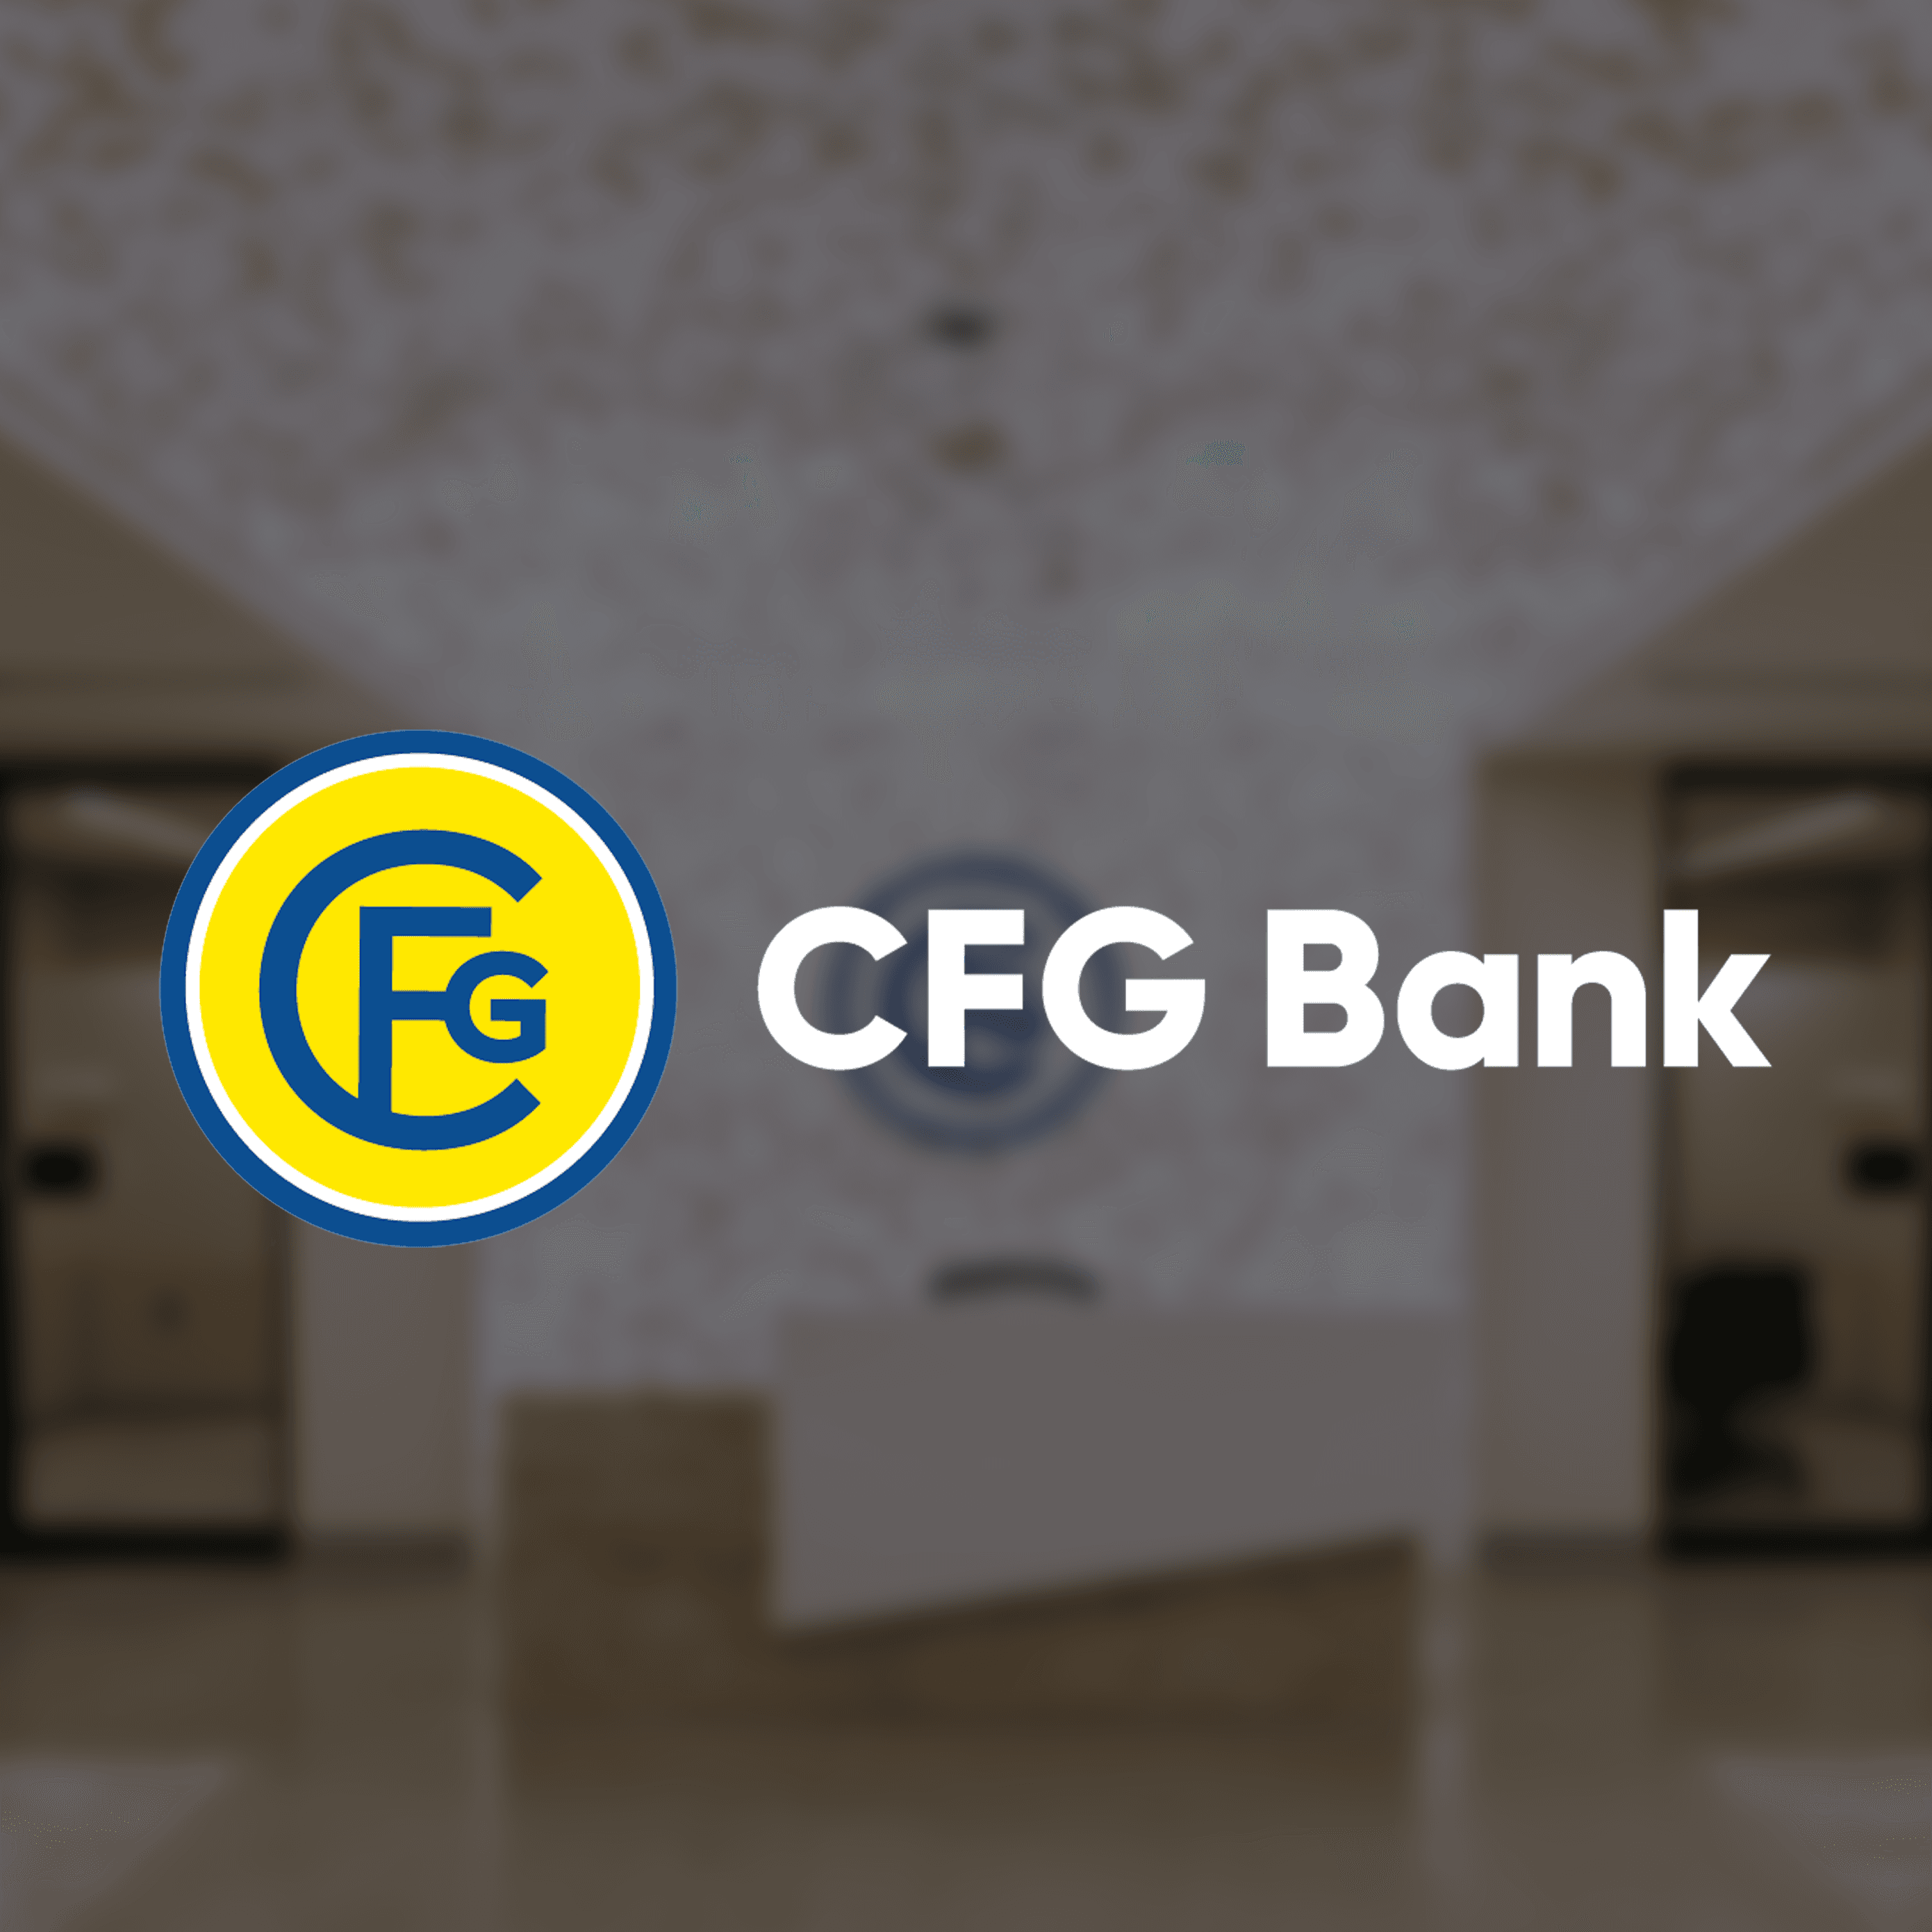 CFG BANK